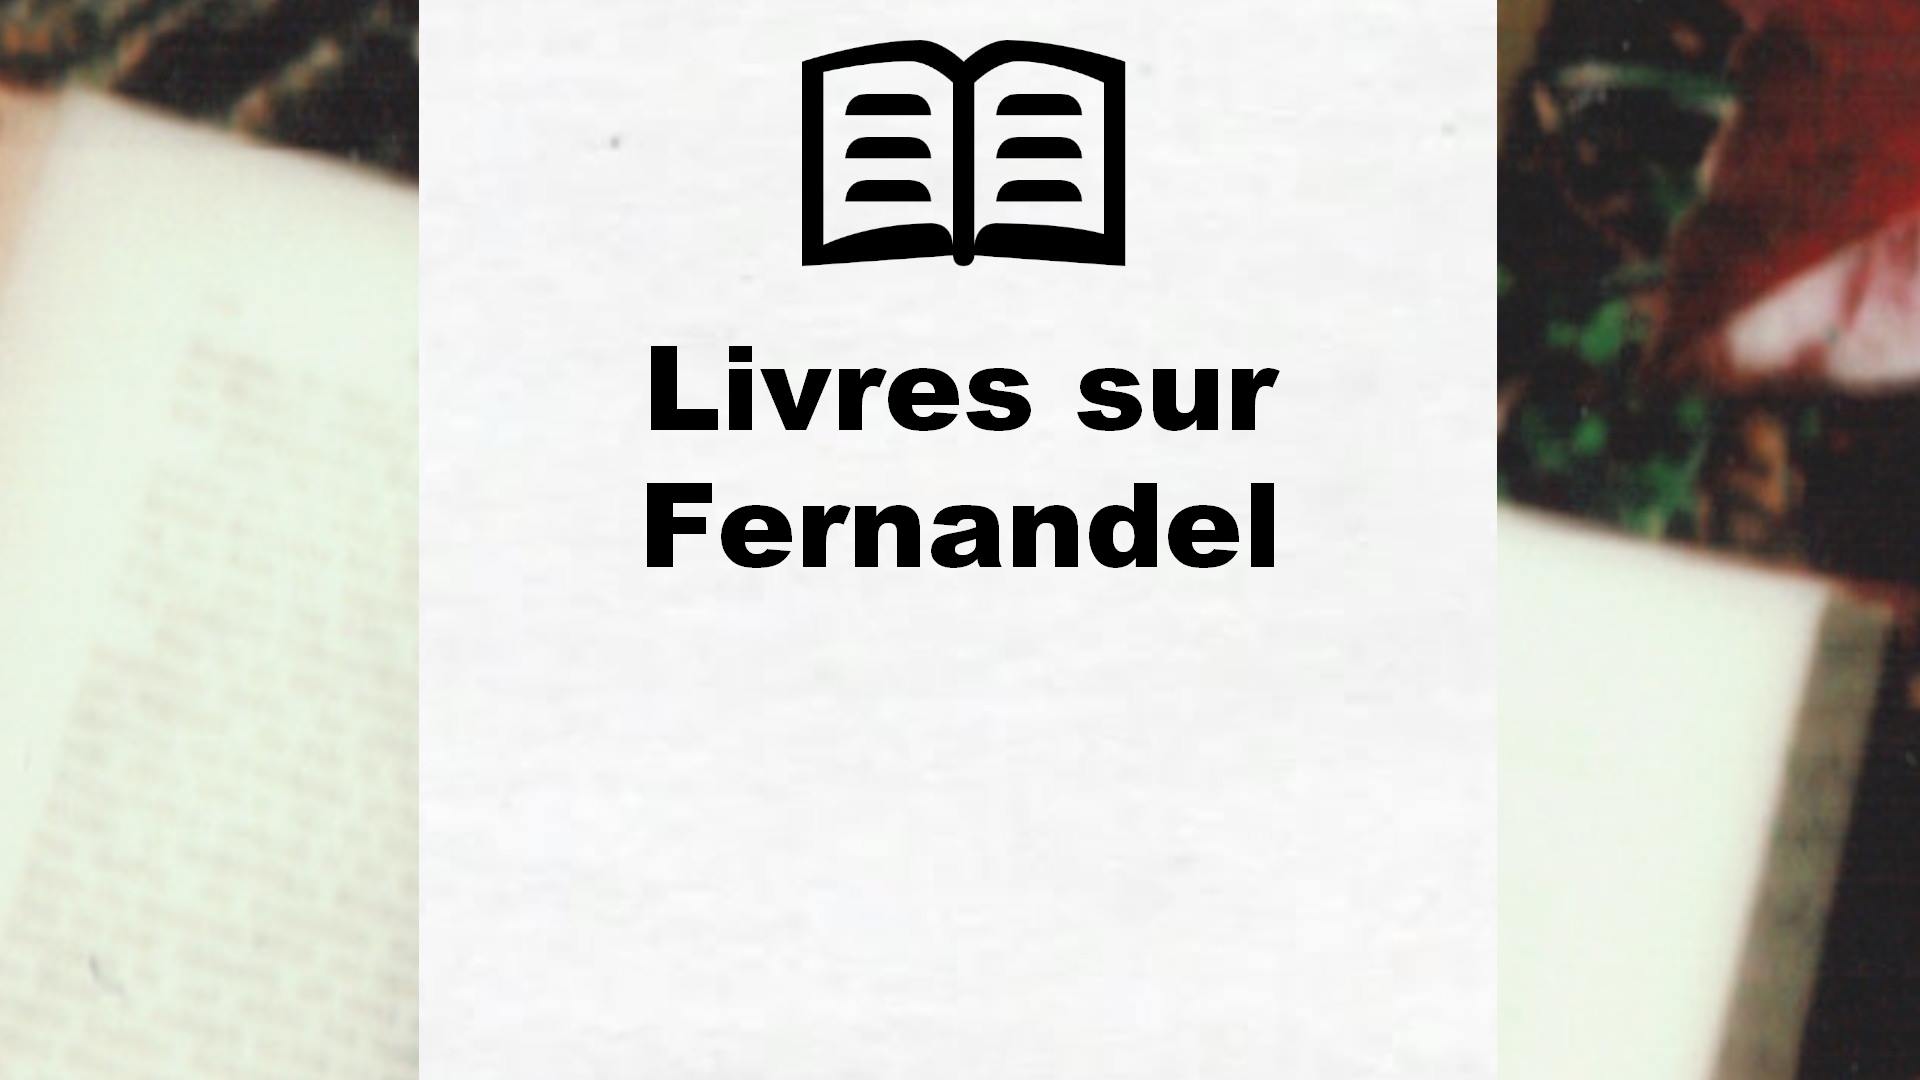 Livres sur Fernandel